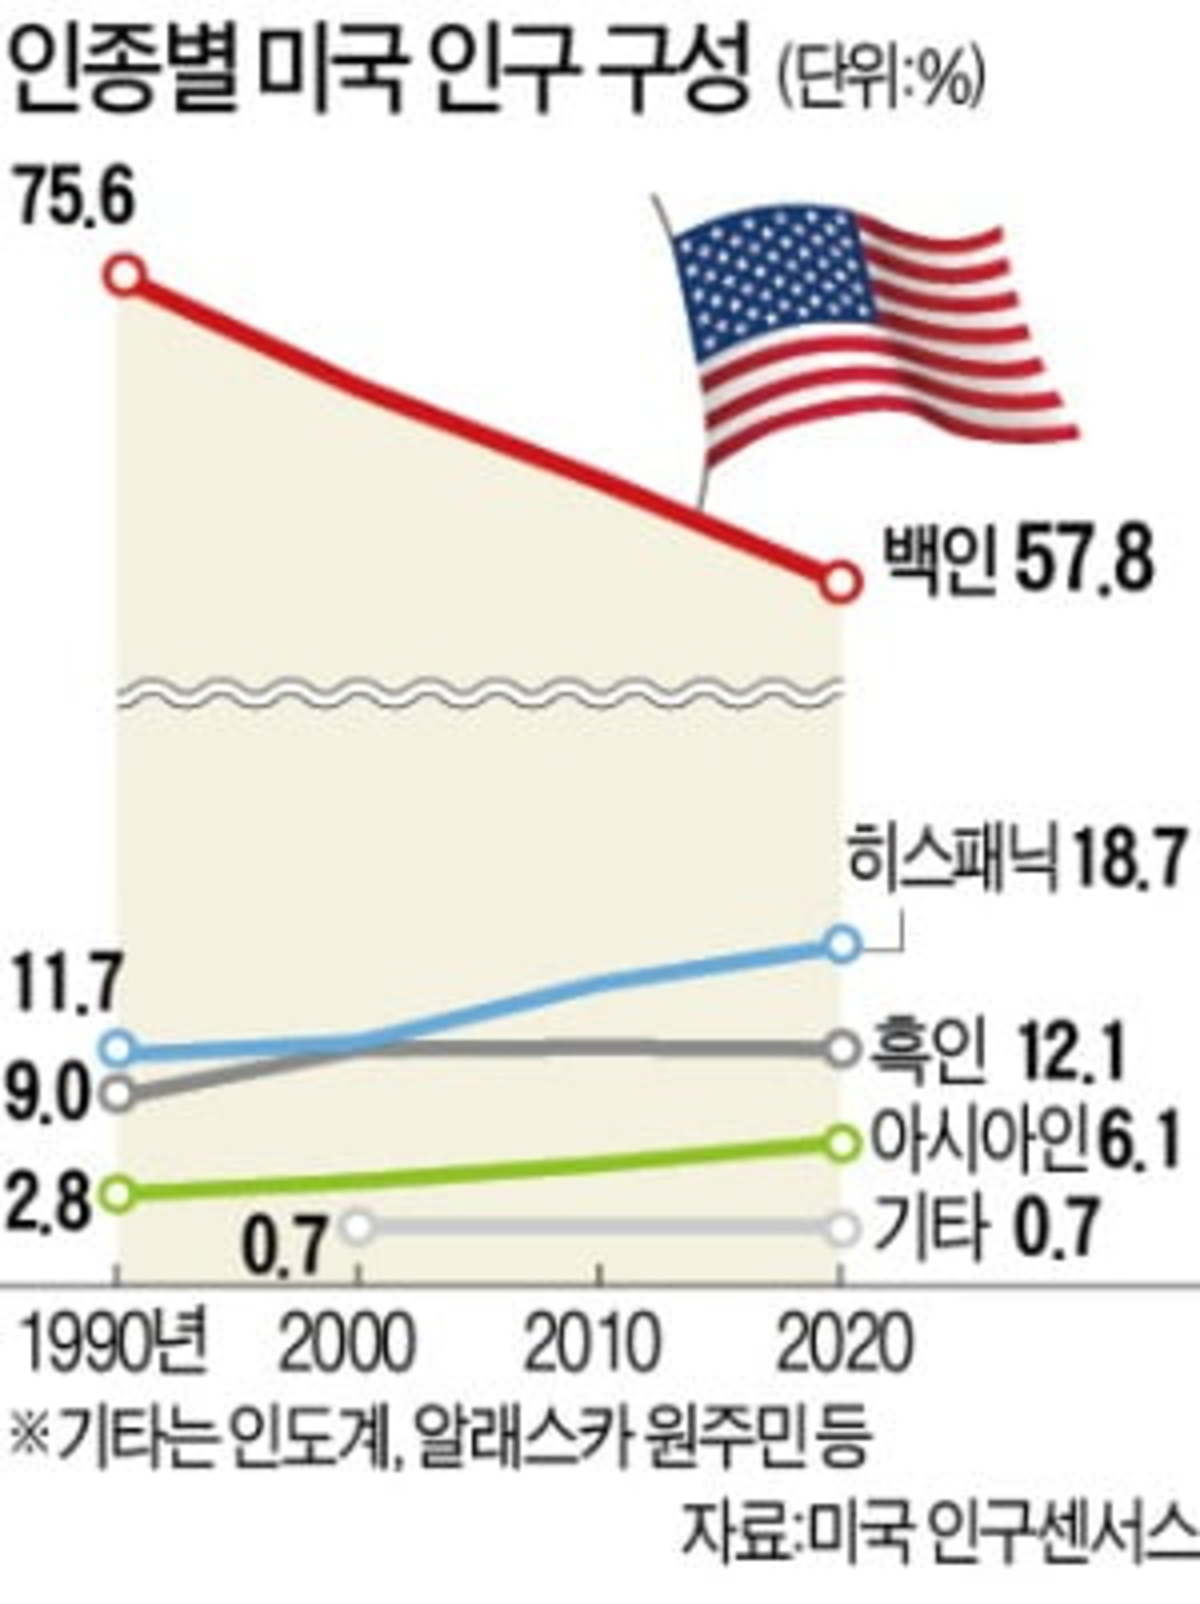 美 백인 인구 60 깨졌다…아시아계 급증 | 한국경제